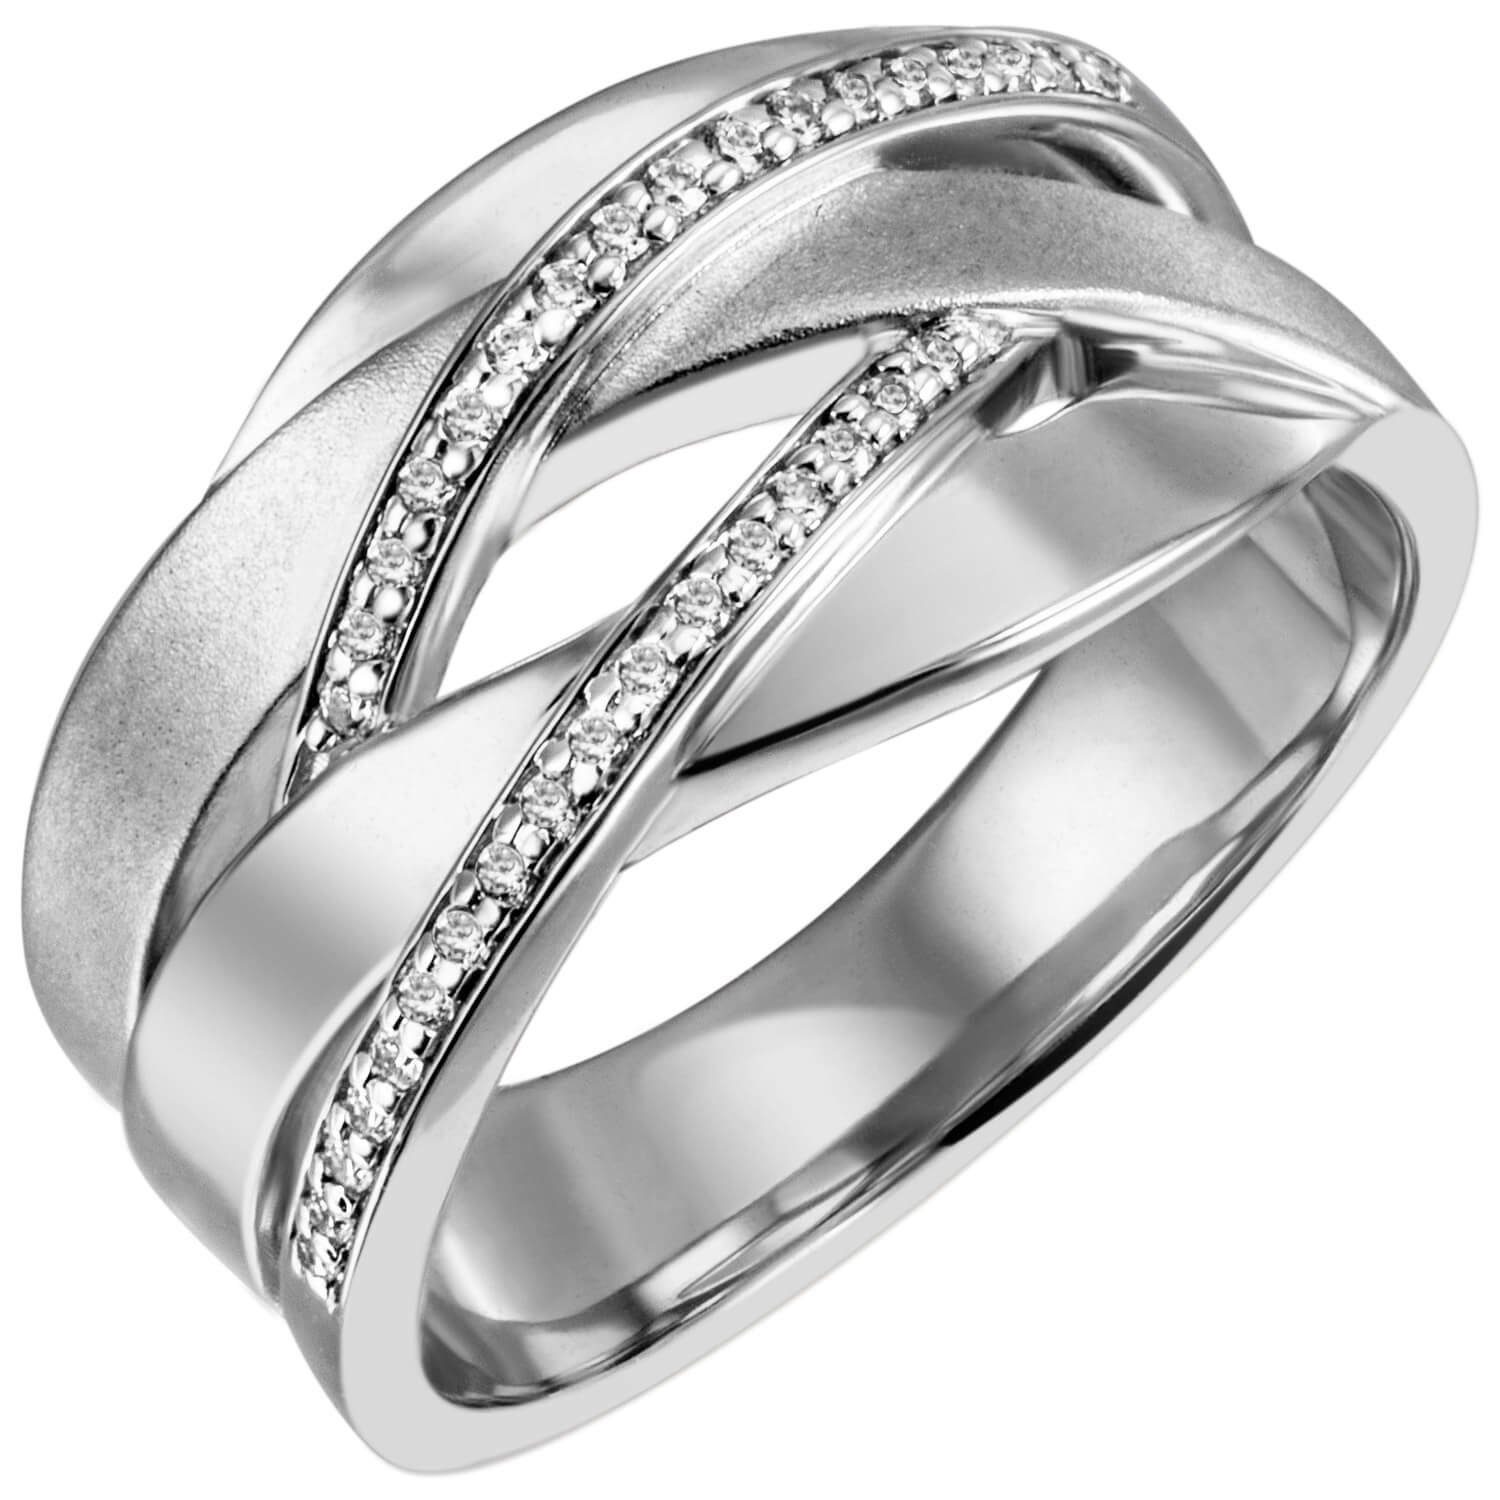 Schmuck Krone Silberring Breiter Ring Damenring 34 Zirkonia 925 Silber rhodiniert teilmattiert Fingerring, Silber 925